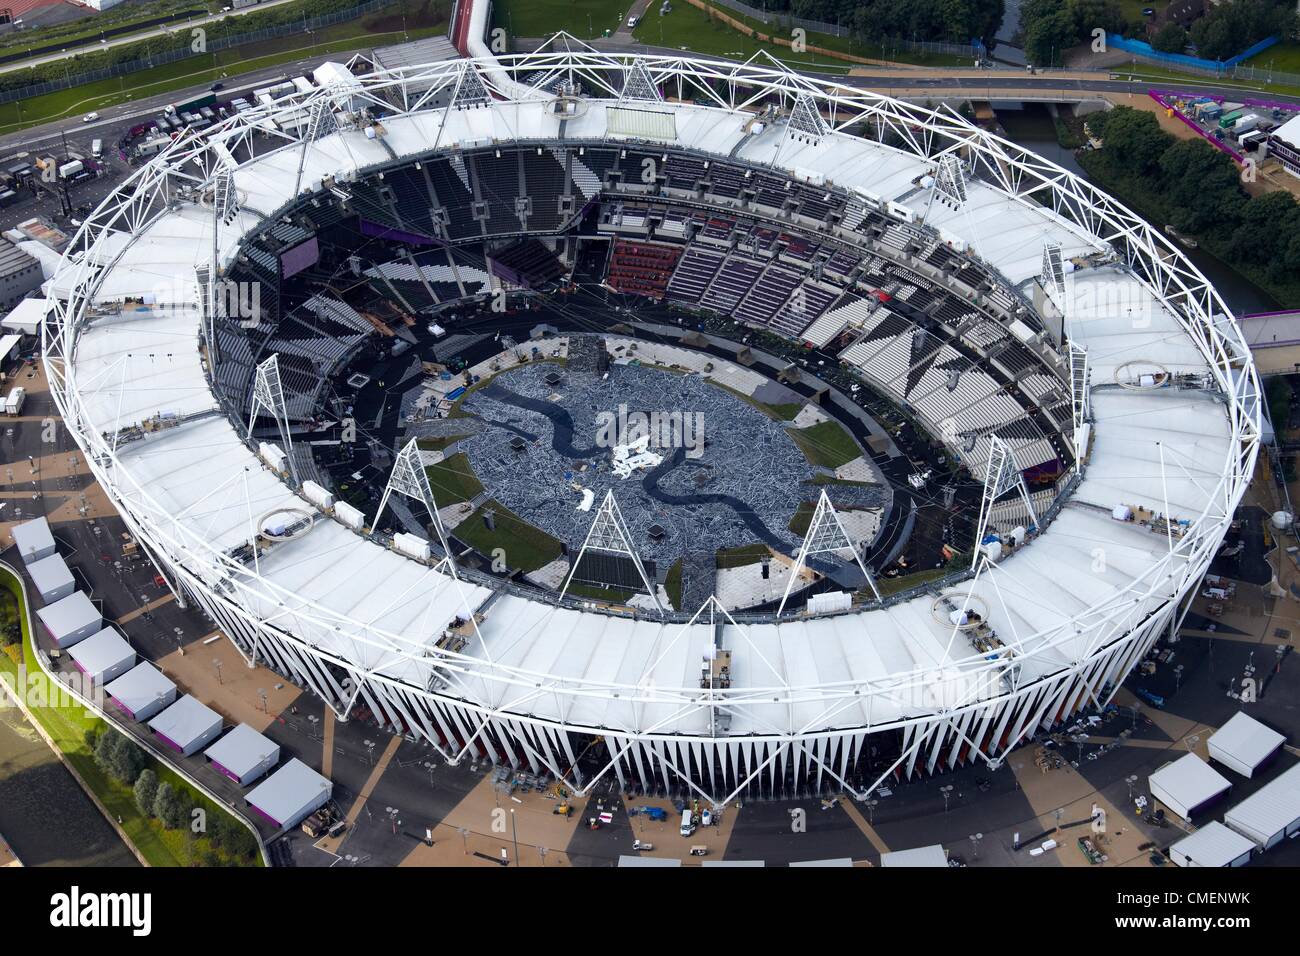 Photographie aérienne au sud-ouest du Stade Olympique dans le parc olympique, Londres 2012 site olympique de Stratford, London E20 UK Banque D'Images